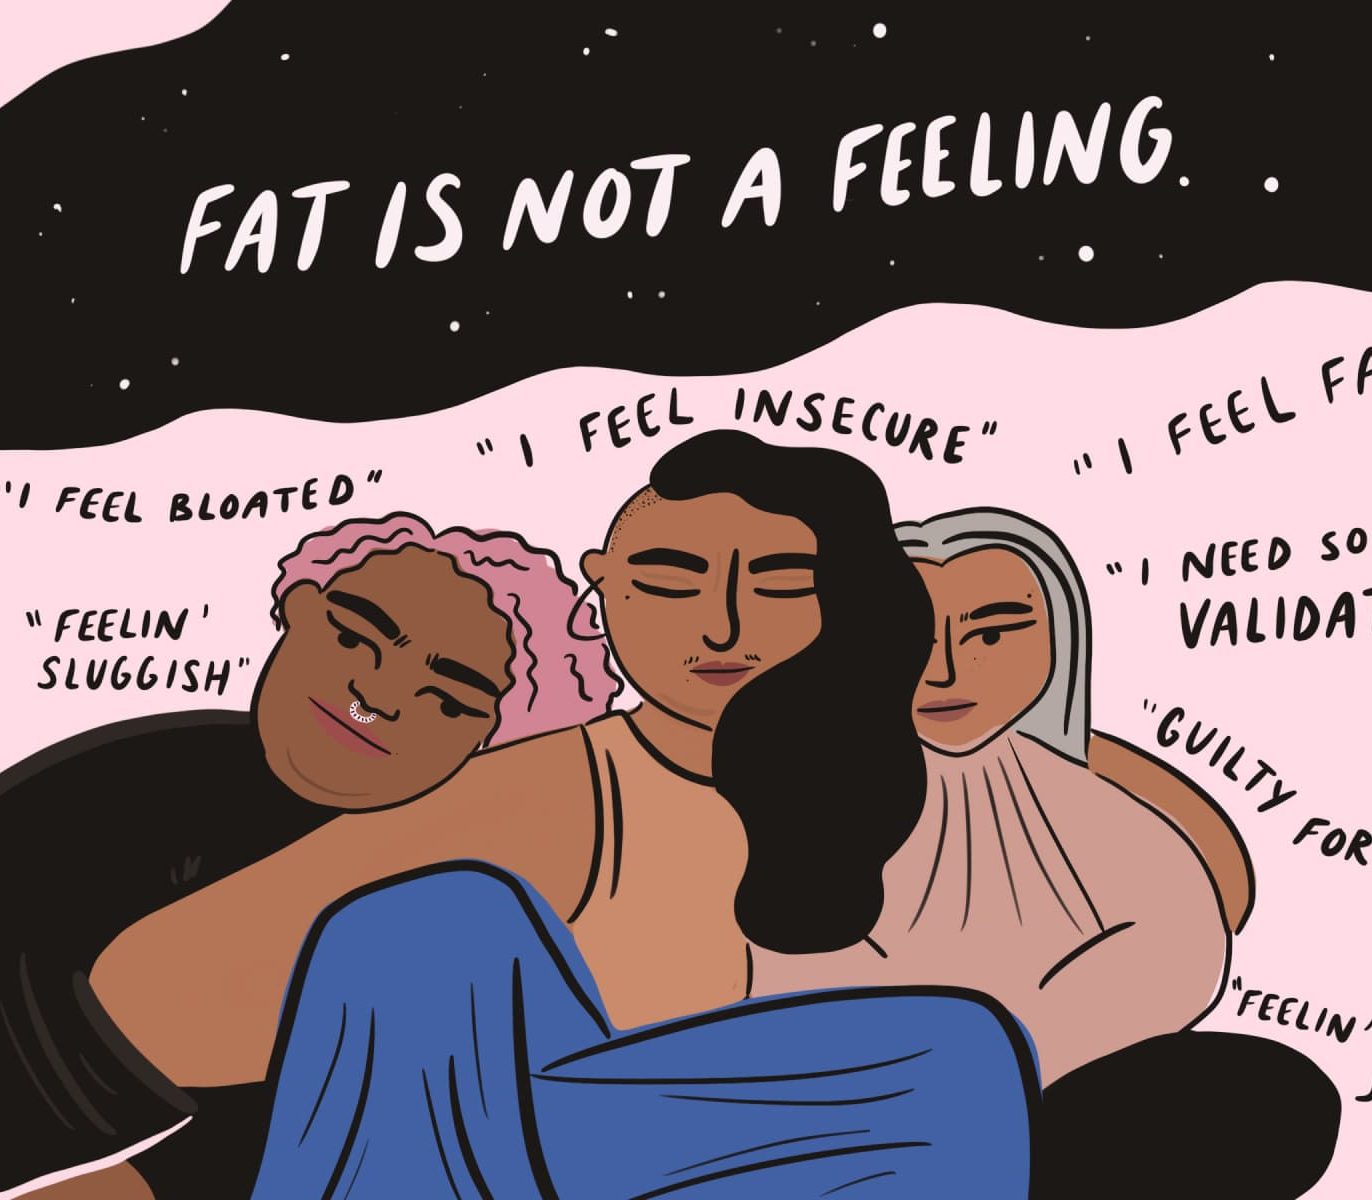 Fat is not a feeling